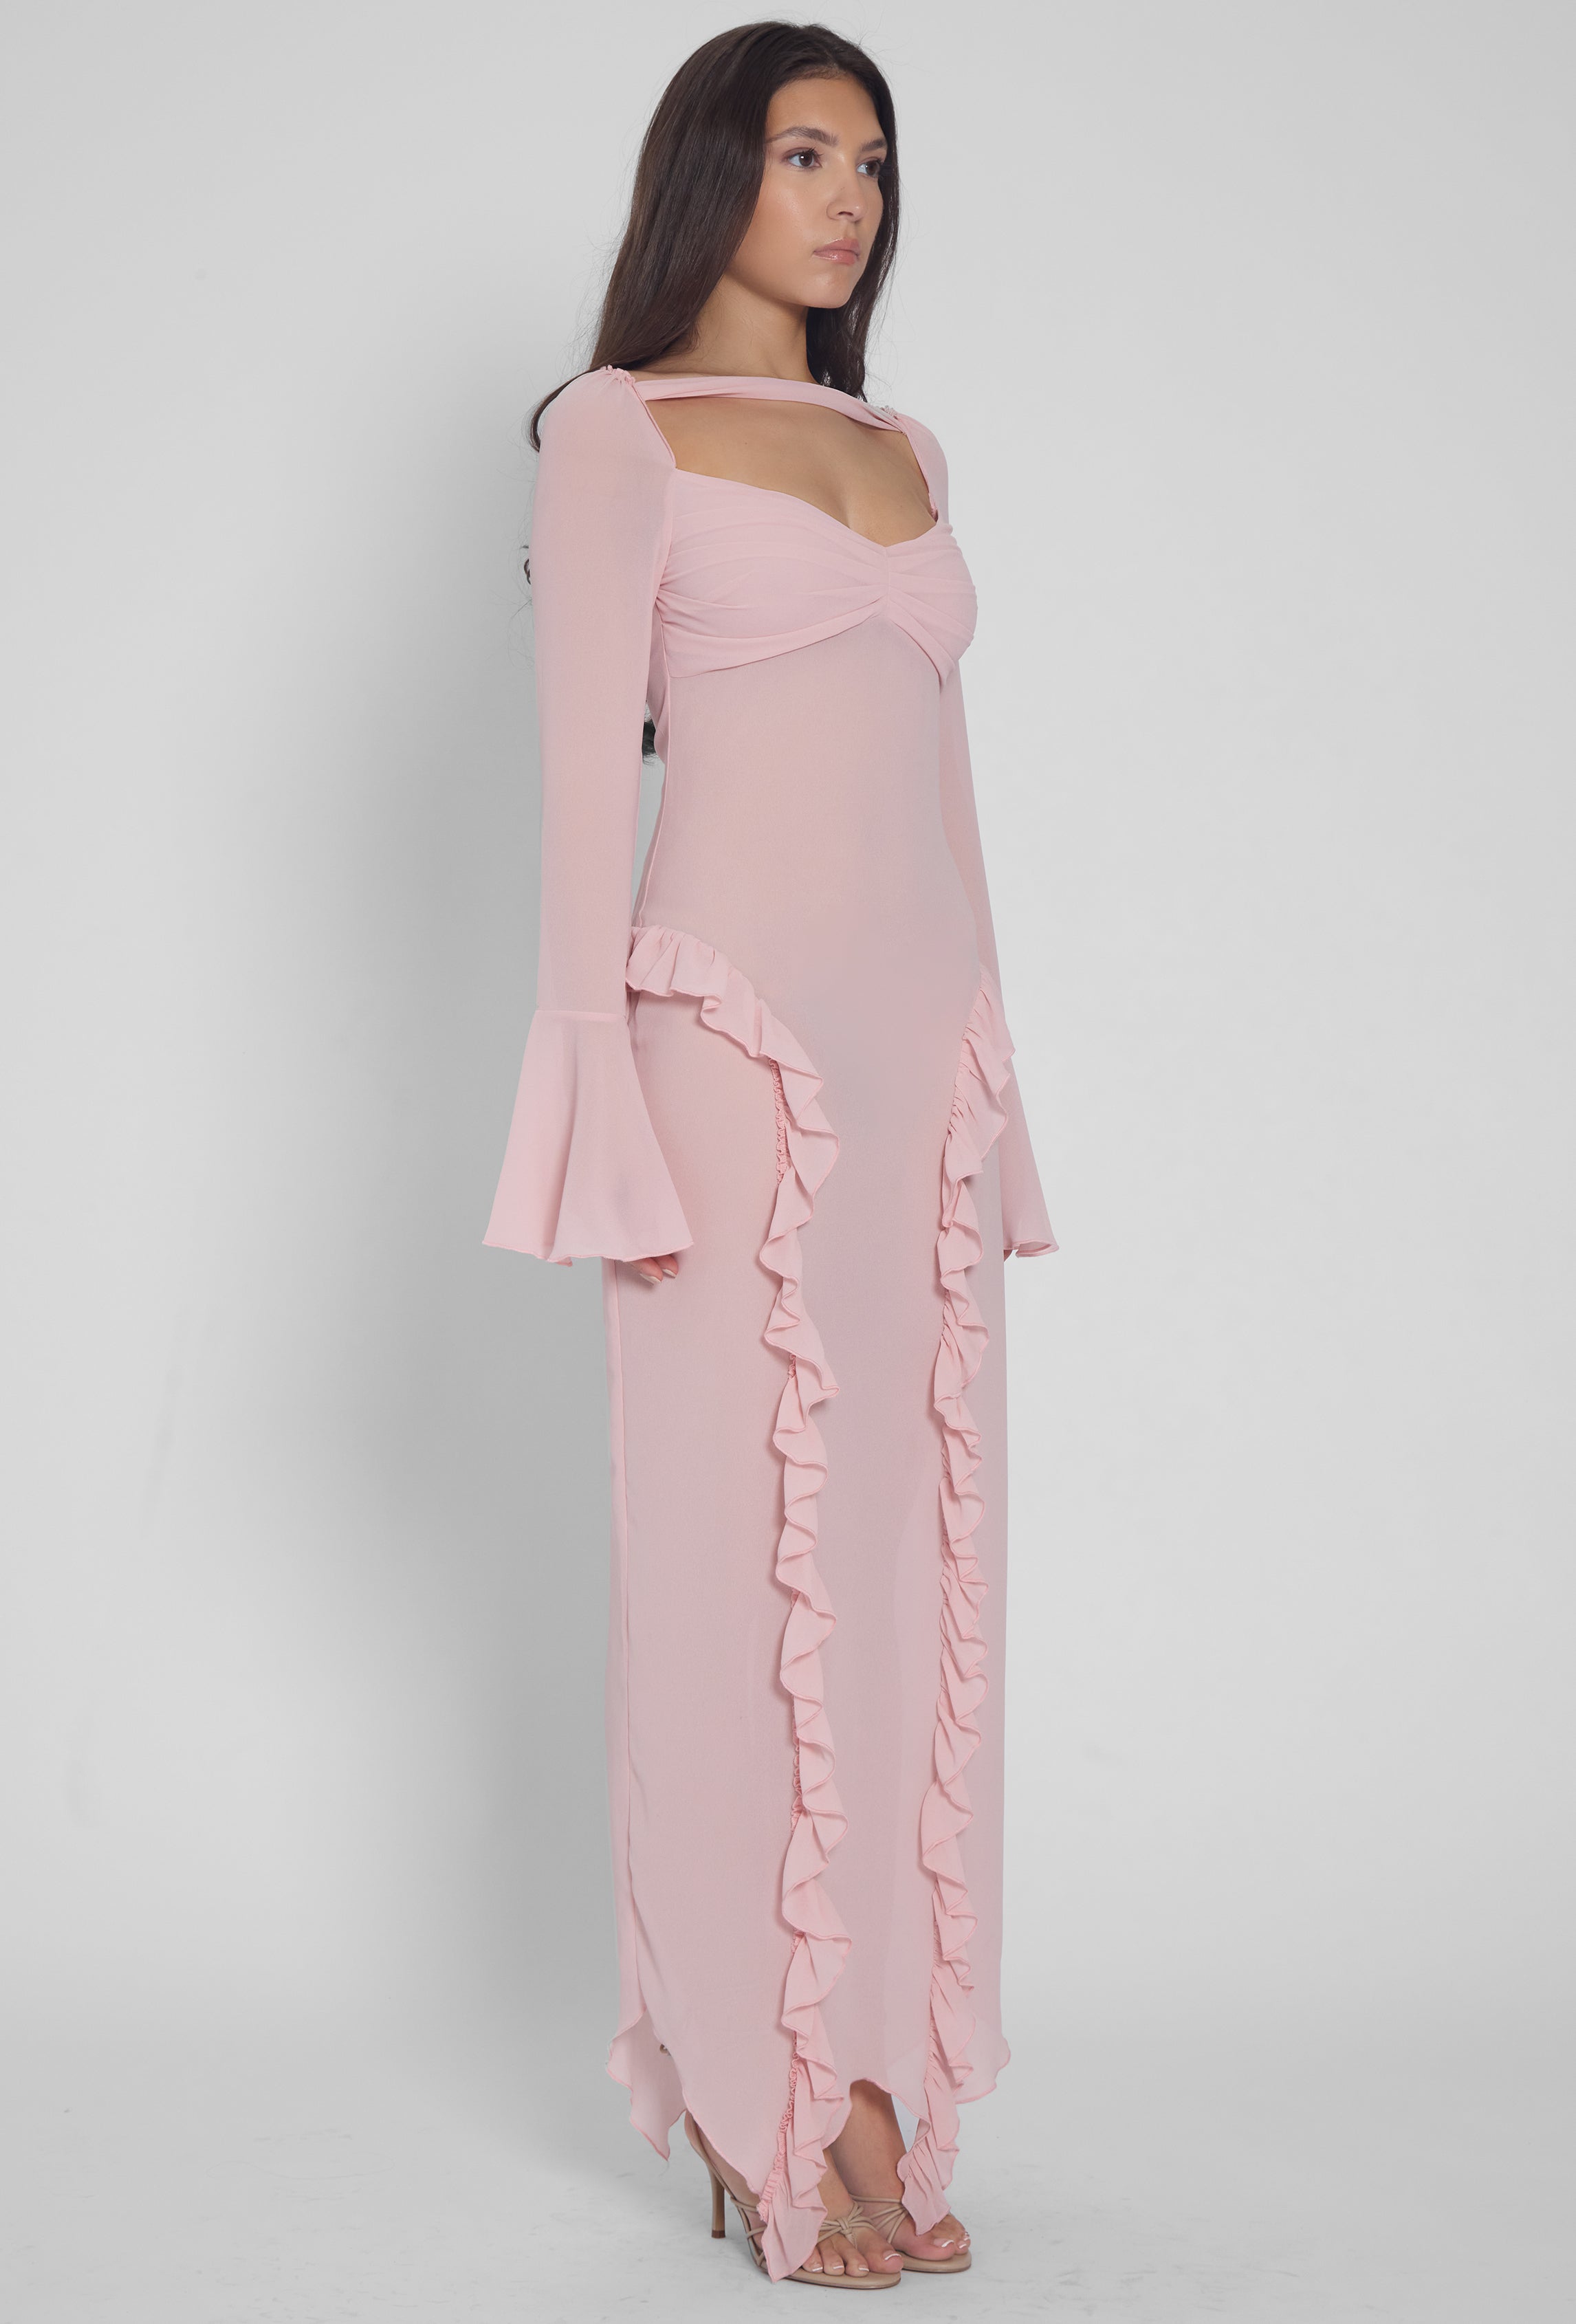 Reina Ruffle Chiffon Dress - Pink.